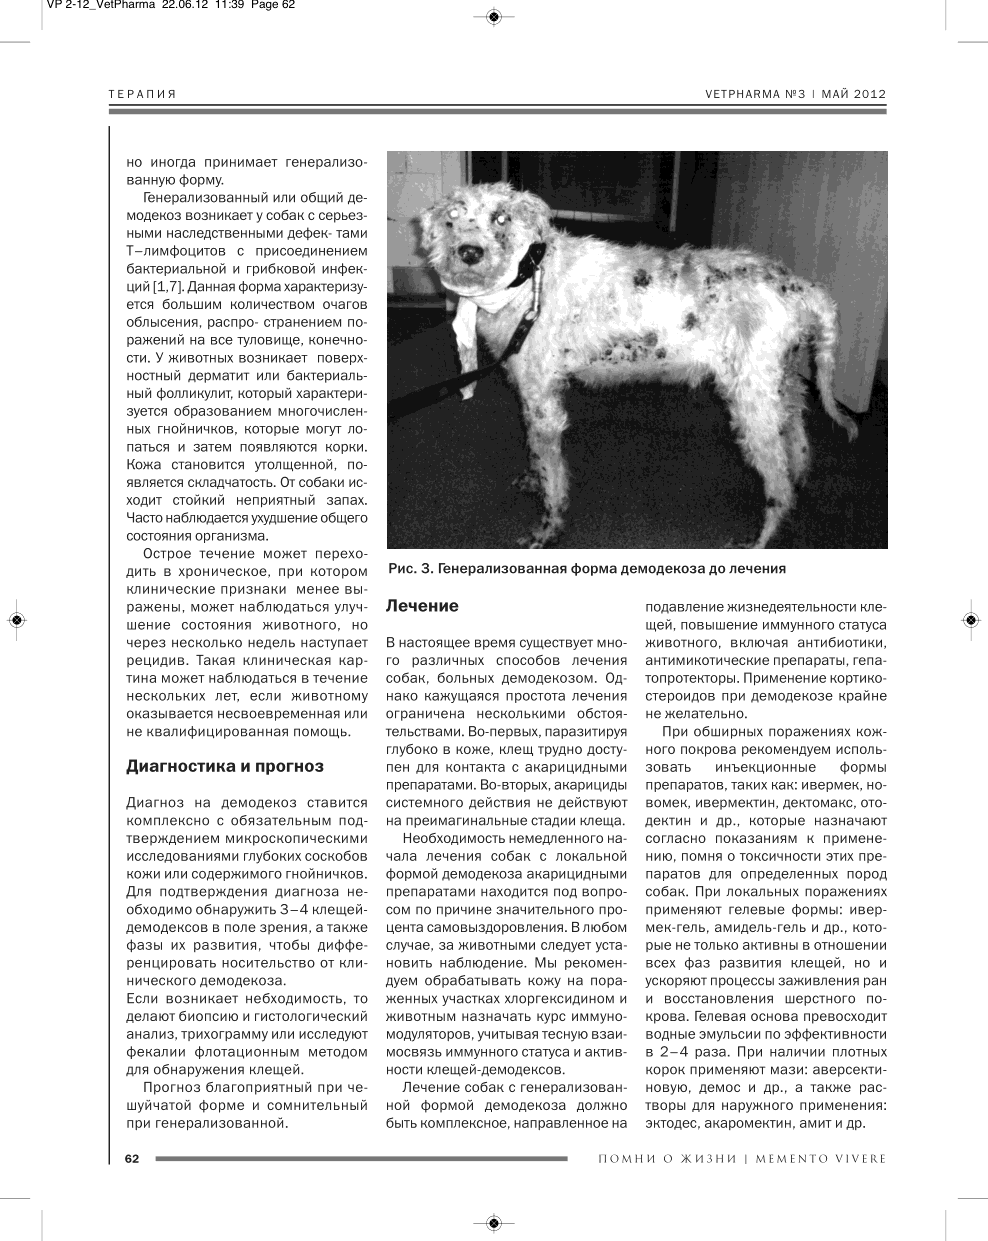 Демодекоз (подкожный клещ) у собак – симптомы и лечение